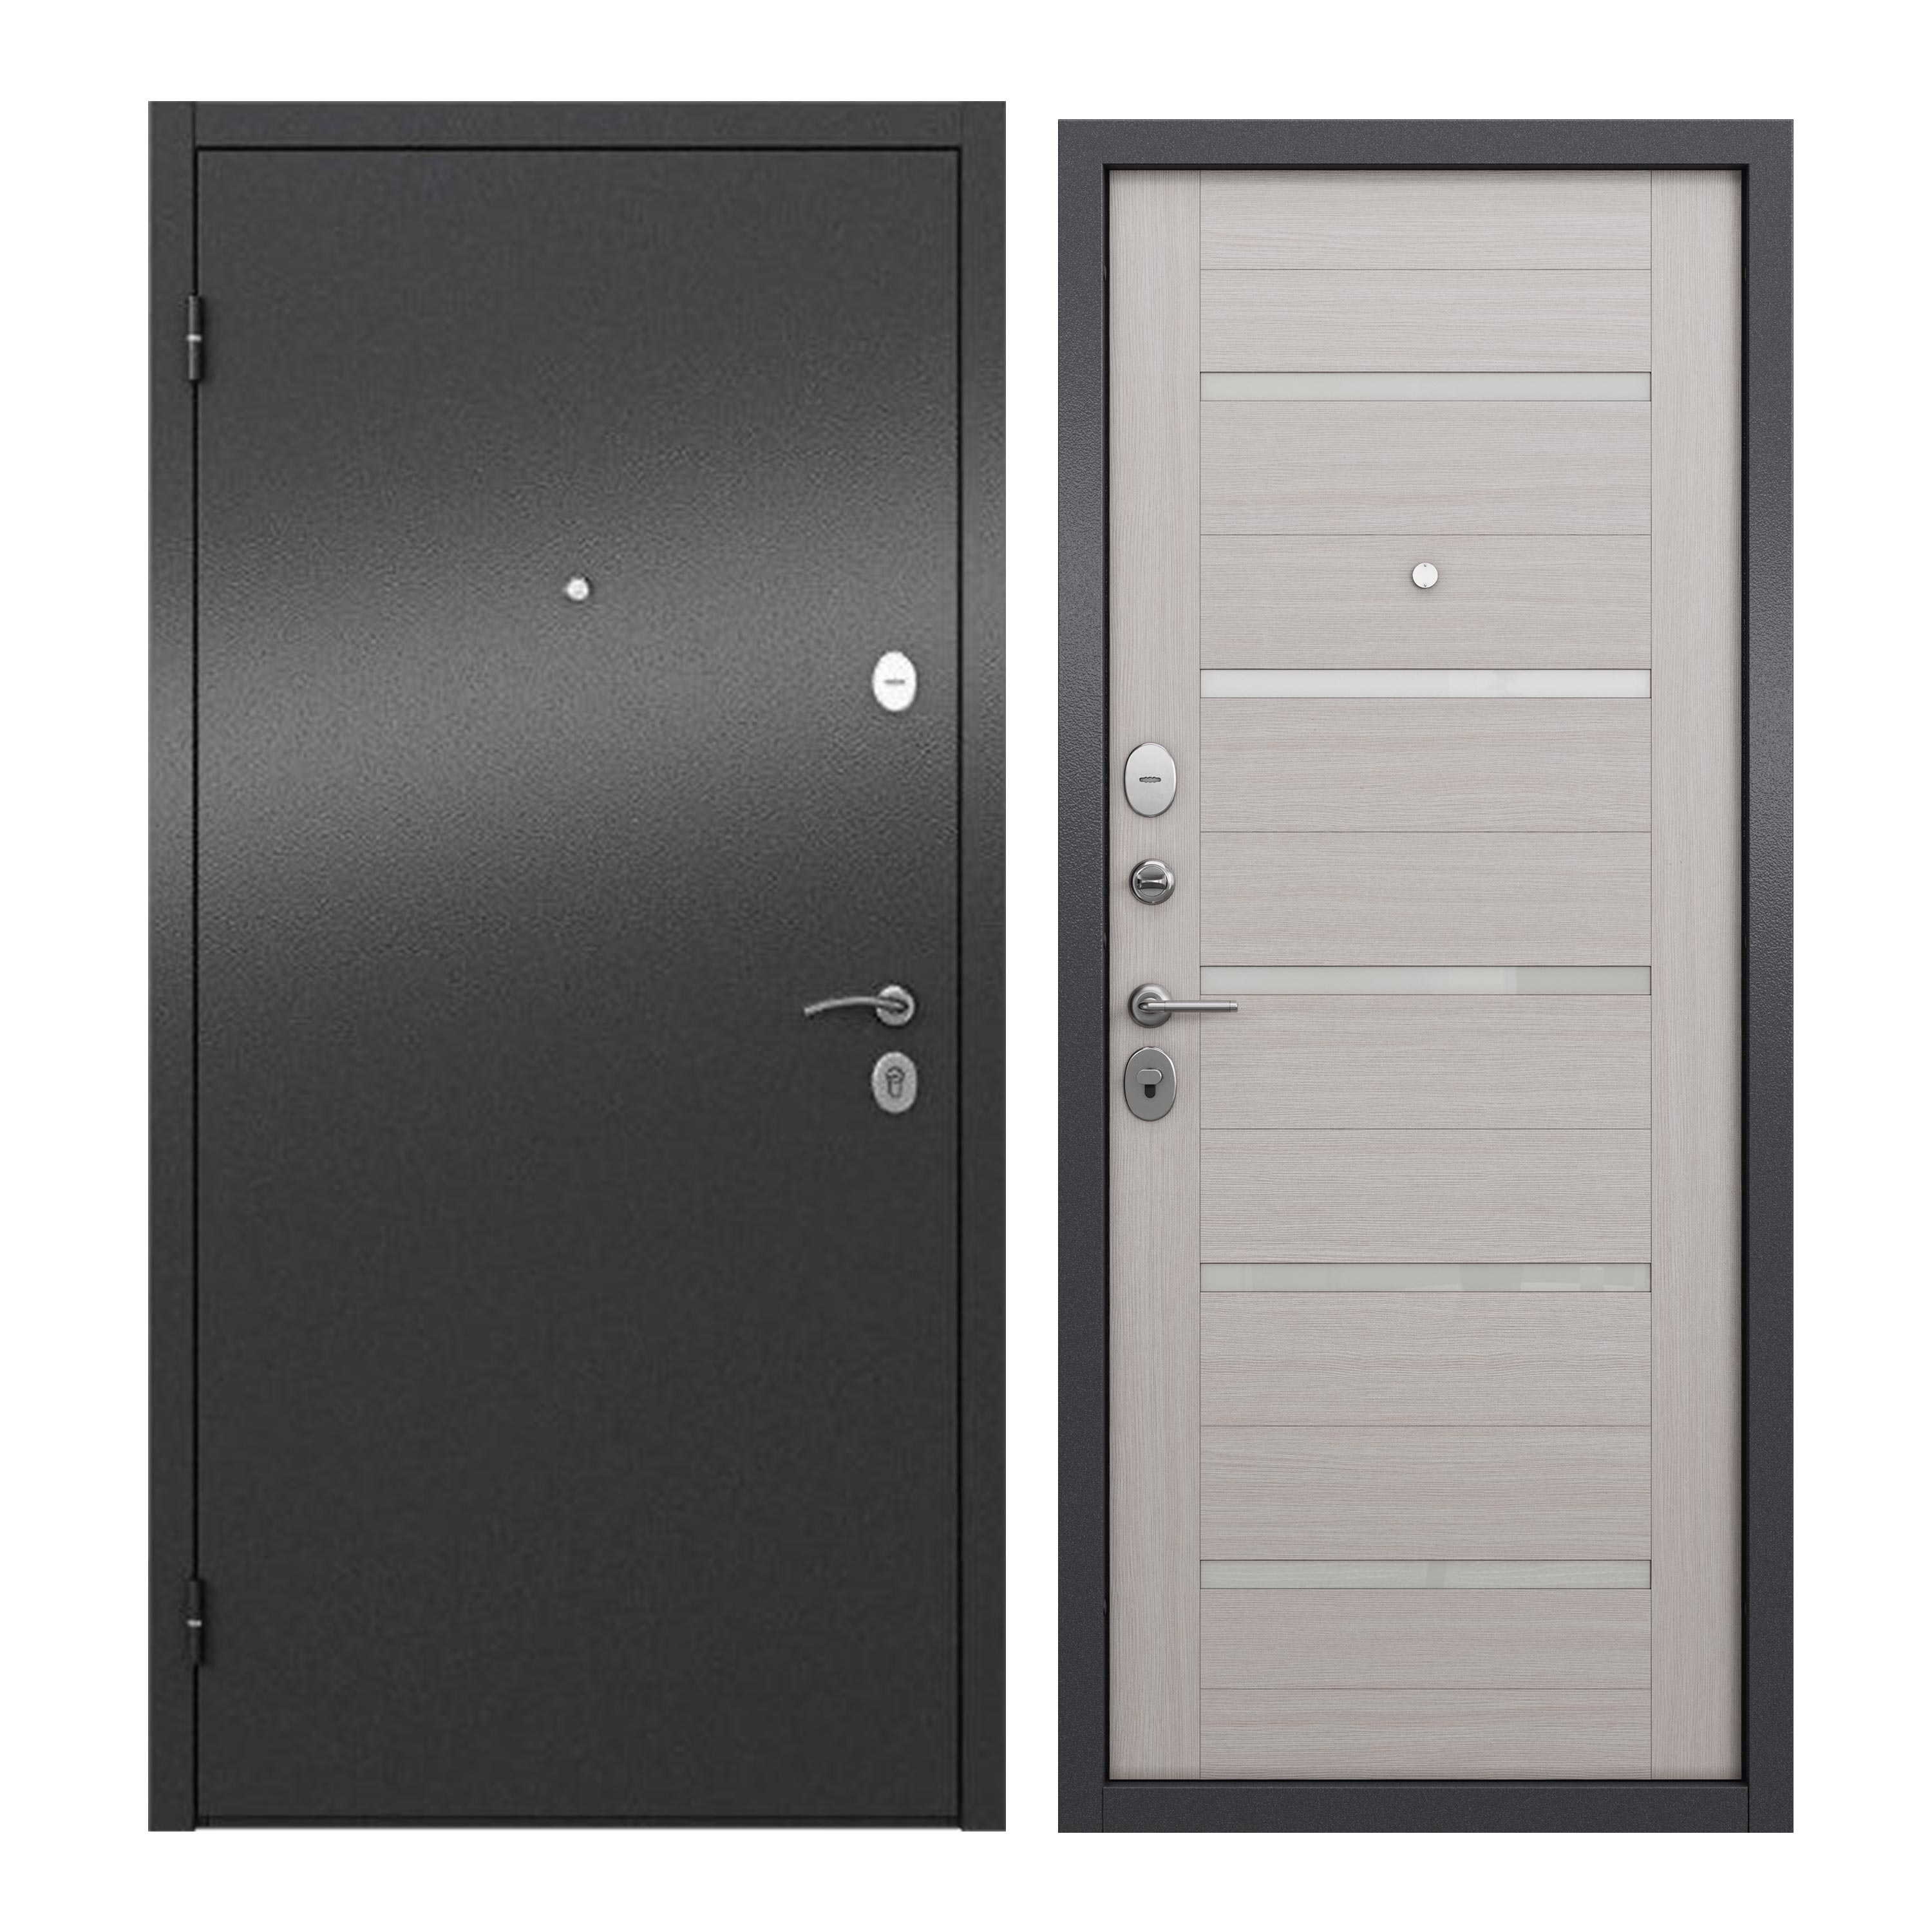 Дверь входная для квартиры ProLine металлическая Apartment X 960х2050, левая, серый дверь входная buldoors ютта левая букле шоколад ларче бьянко с зеркалом 960х2050 мм